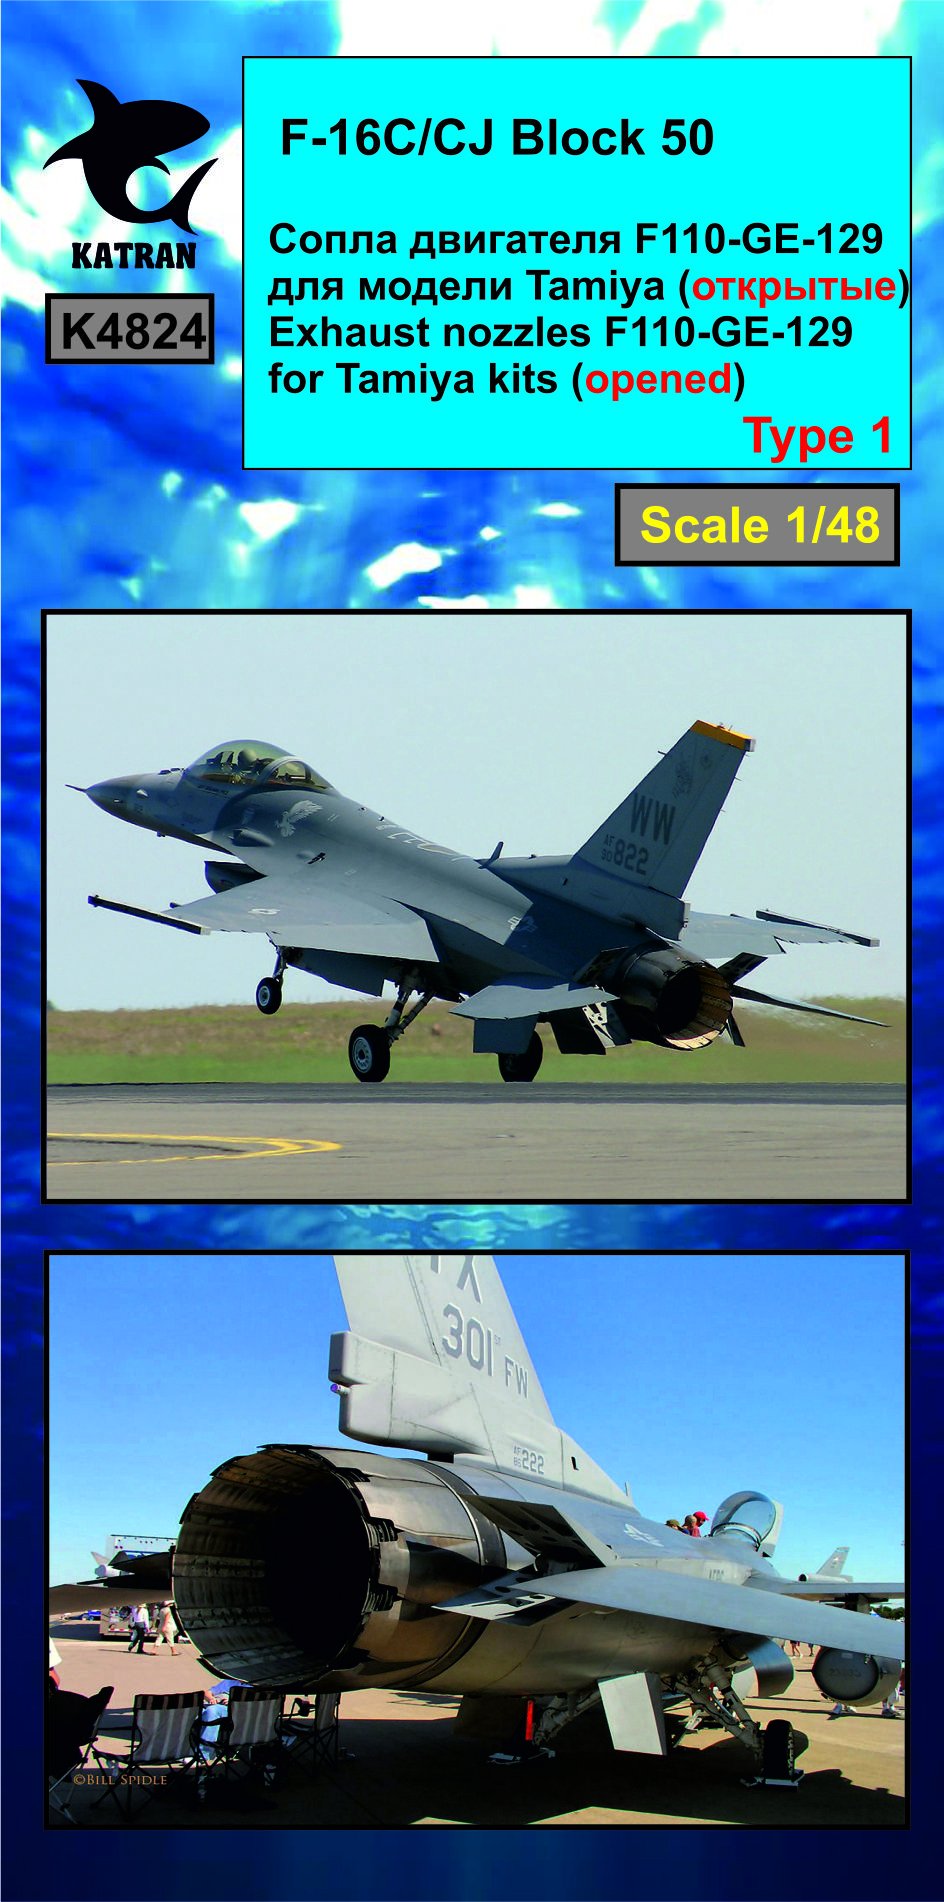 Дополнения из смолы 1/48 F-16C/CJ Block 50 сопла двигателя F-110-GE-129 (opened) (Katran) 